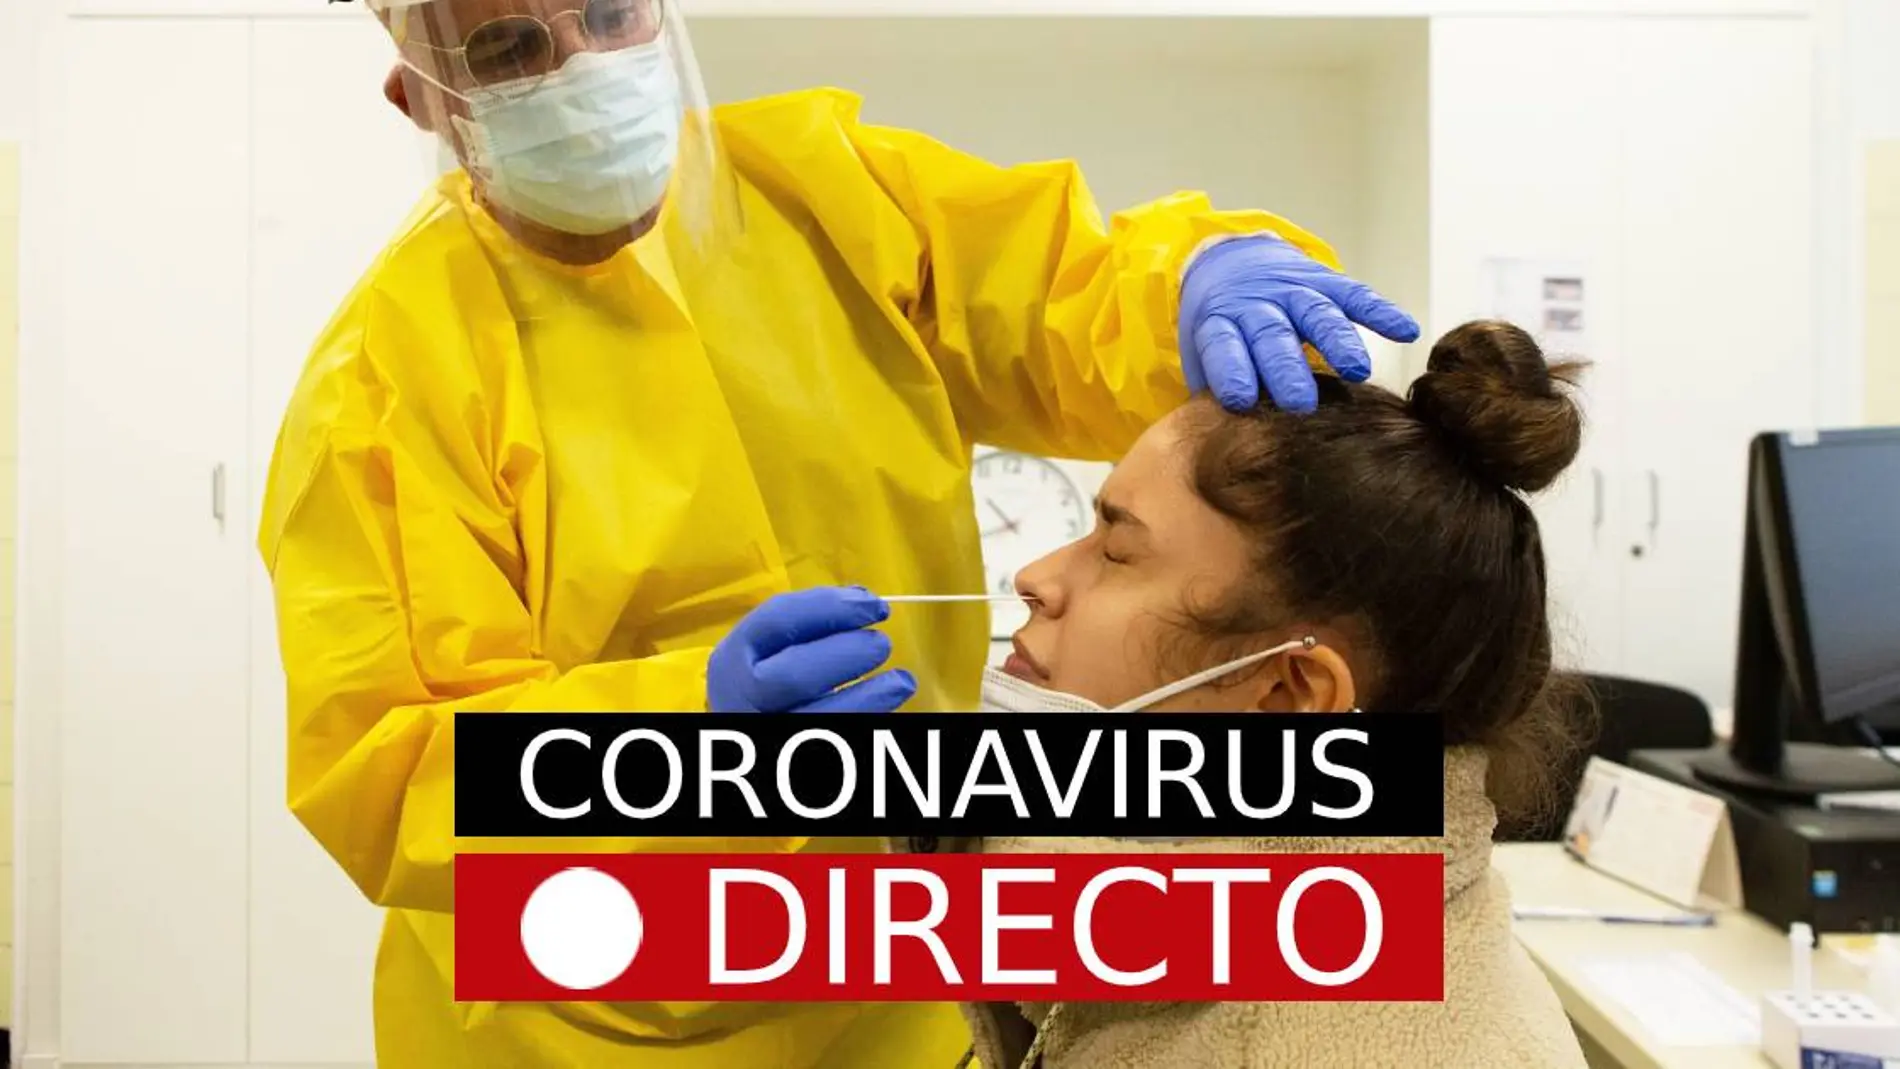 Madrid y España | Coronavirus y confinamiento, hoy: Restricciones y noticias de última hora de COVID-19, EN DIRECTO